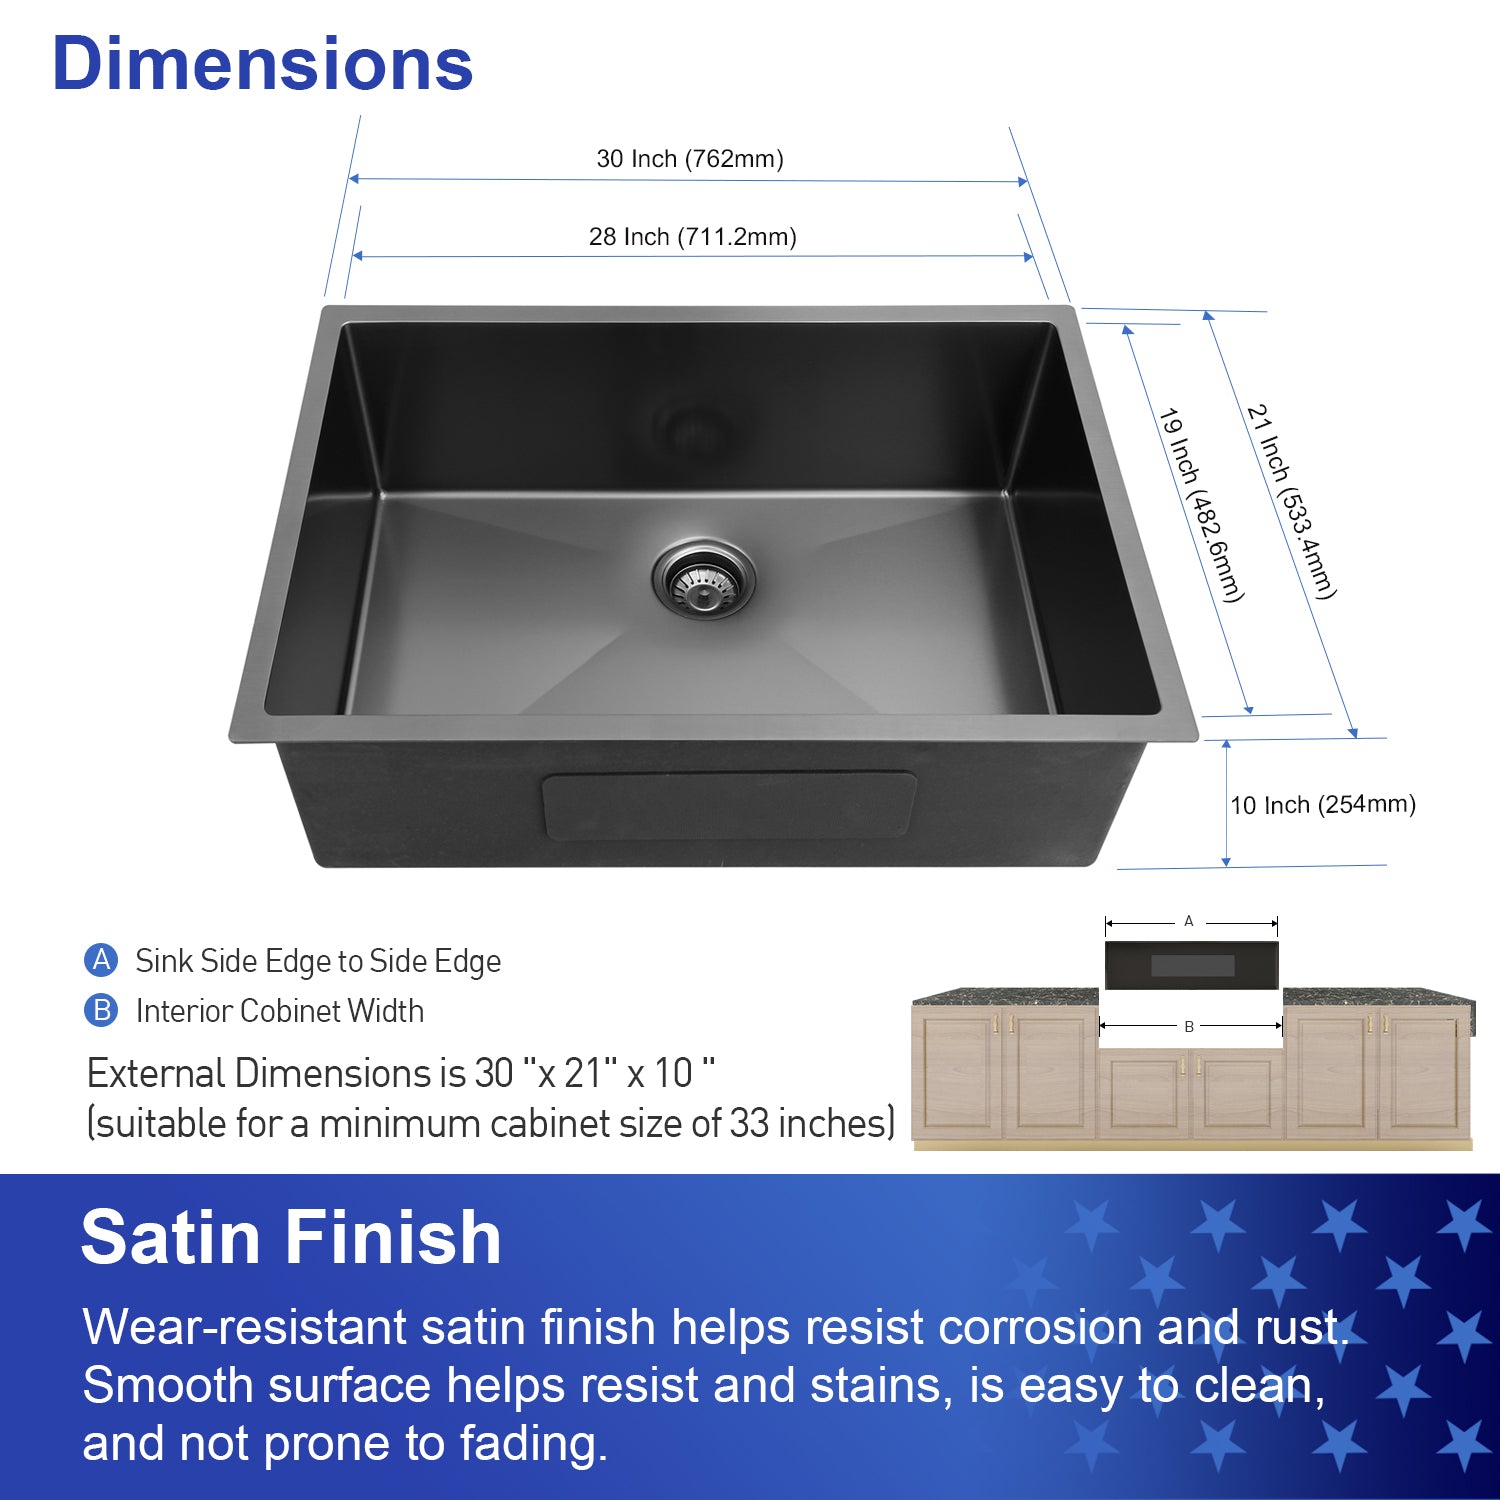 30" x 21"Undermount Kitchen Sink 16 Gauge Stainless Steel Single Bowl Kitchen Sink Gunmetal Black